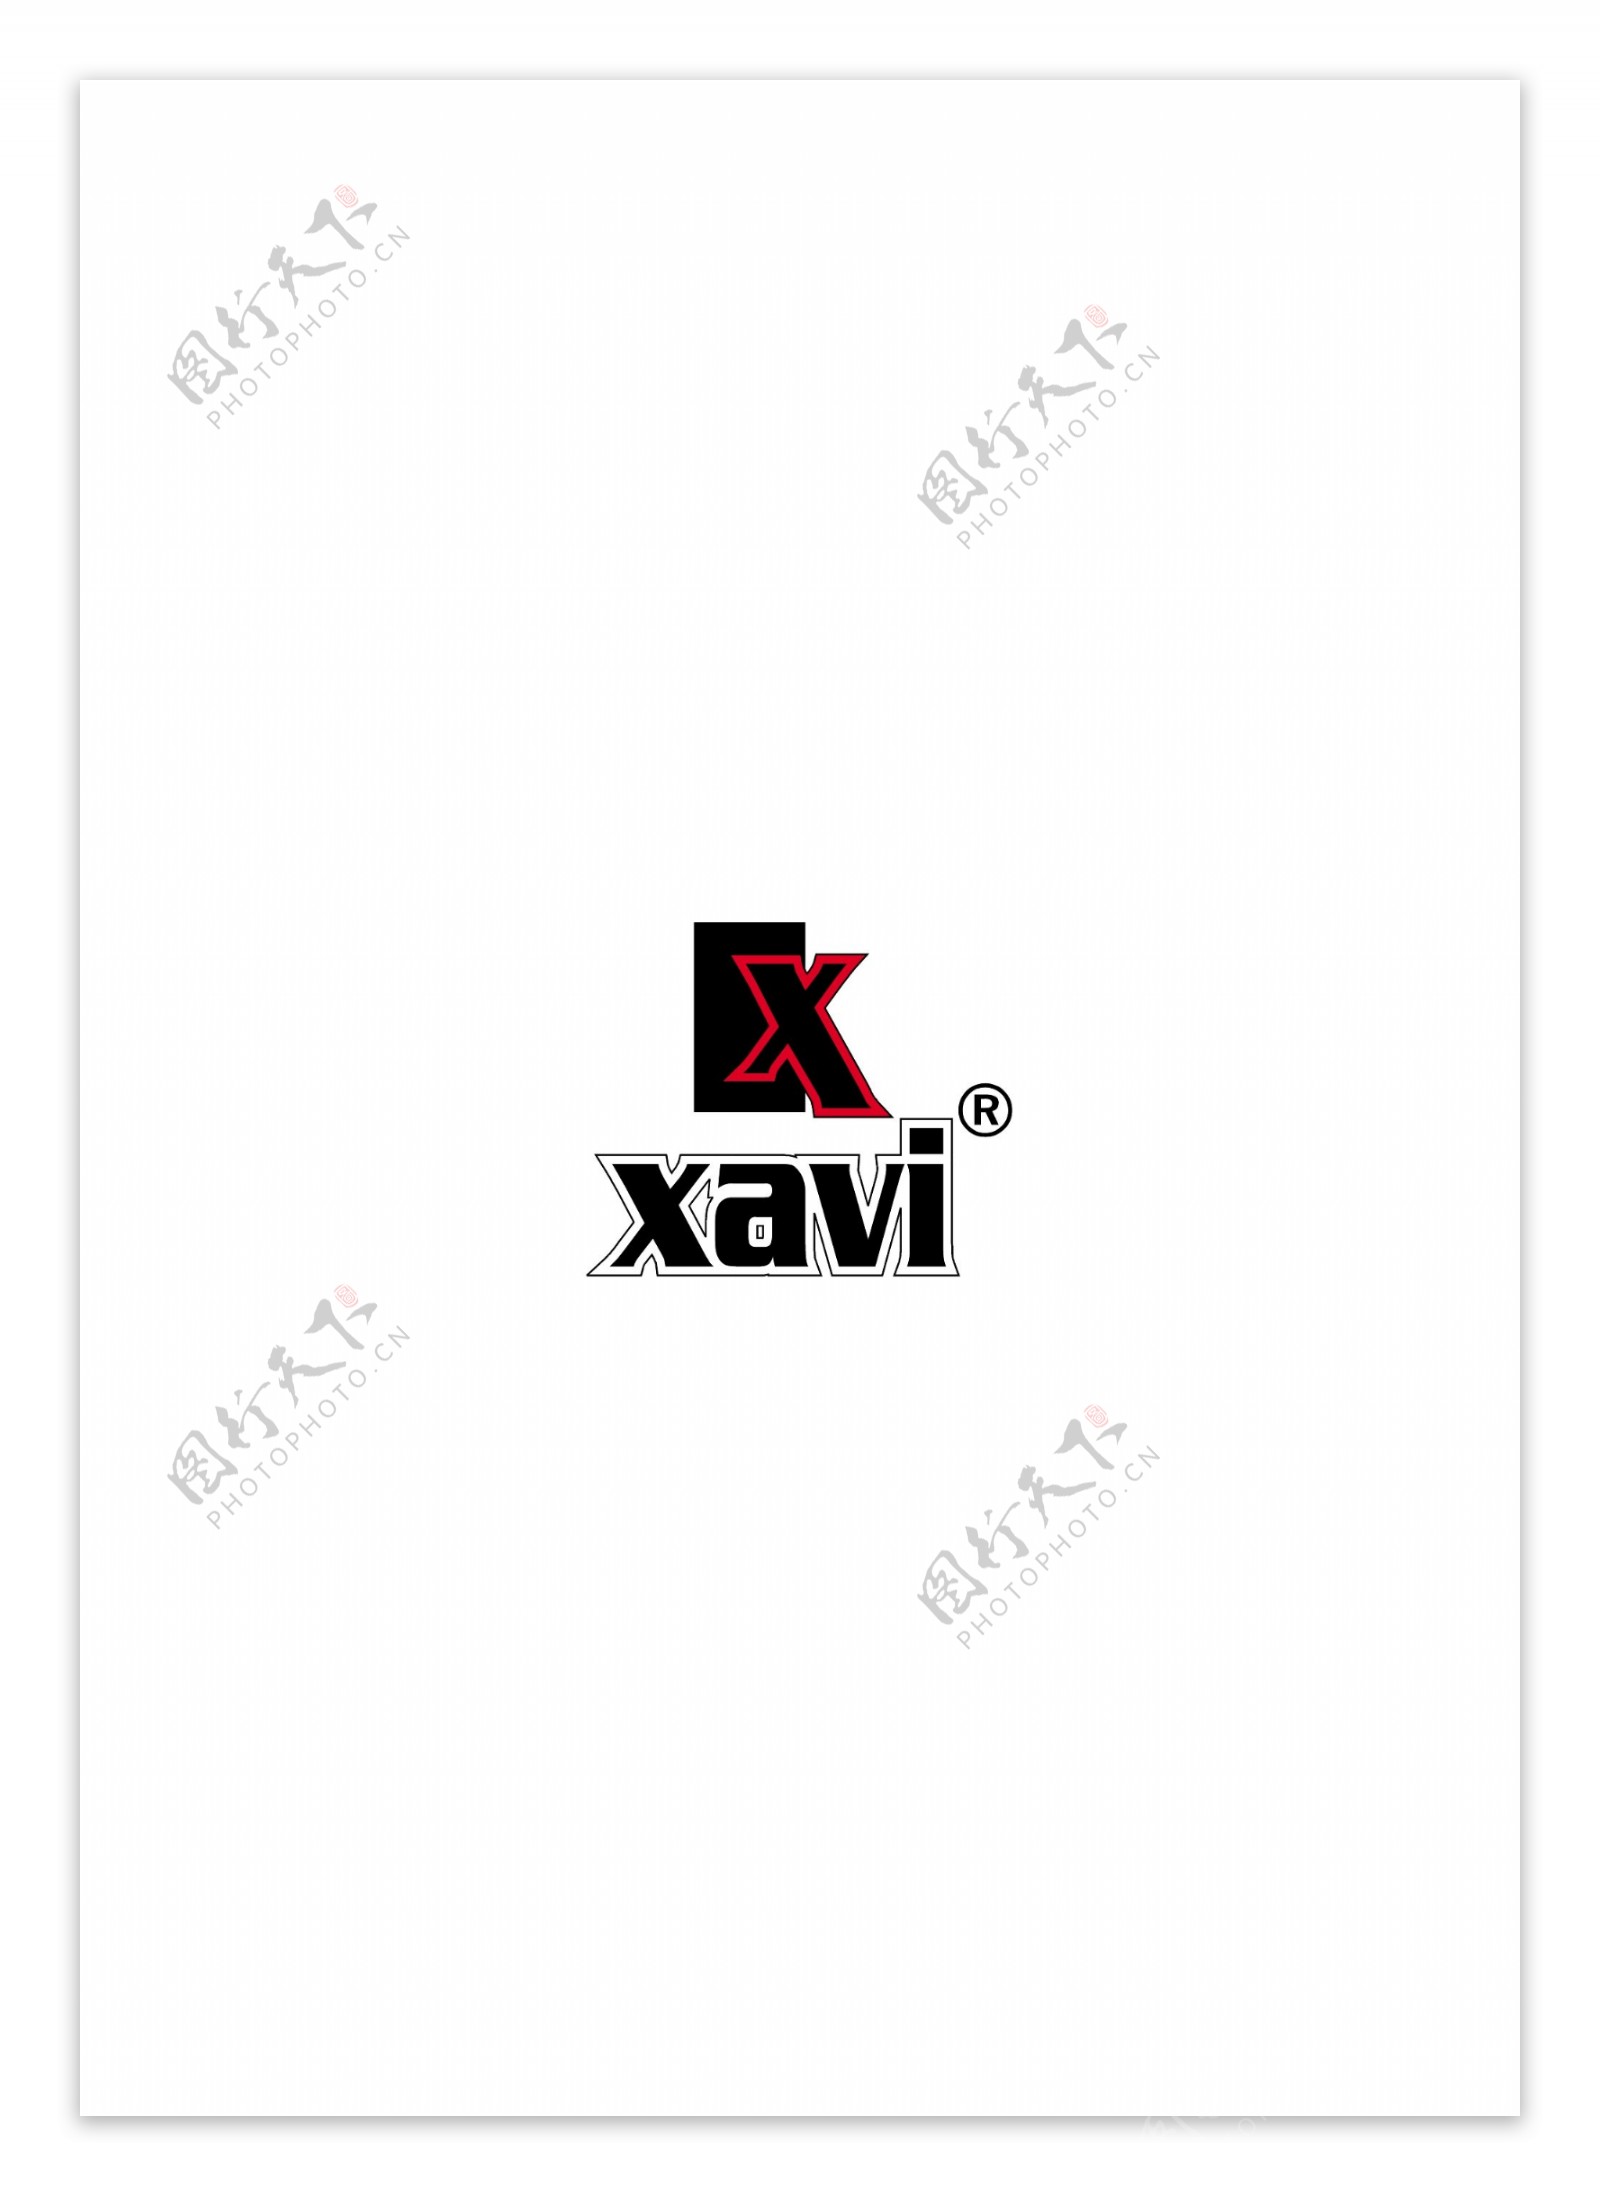 Xavilogo设计欣赏Xavi体育比赛LOGO下载标志设计欣赏